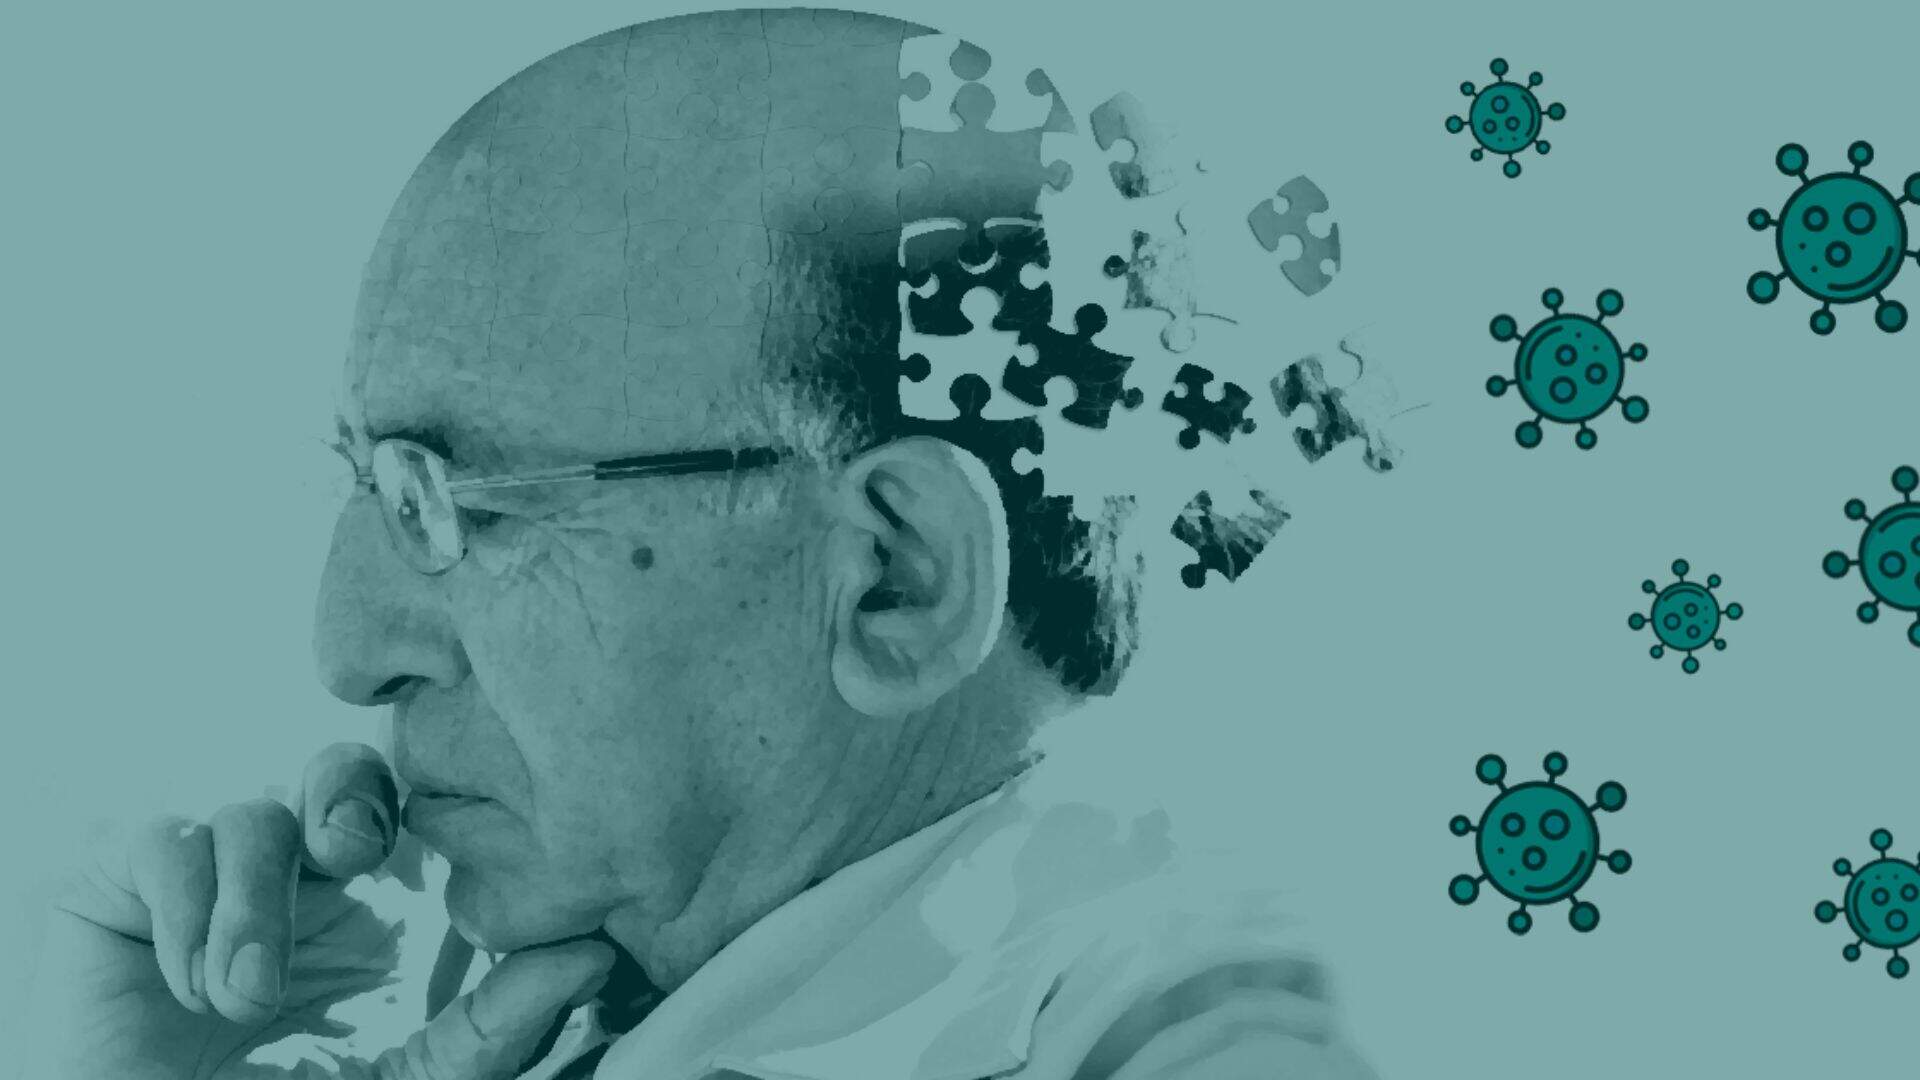 Revelado! Após décadas de estudo, mistério envolvendo cura do Alzheimer é citada por cientistas - Metropolitana FM